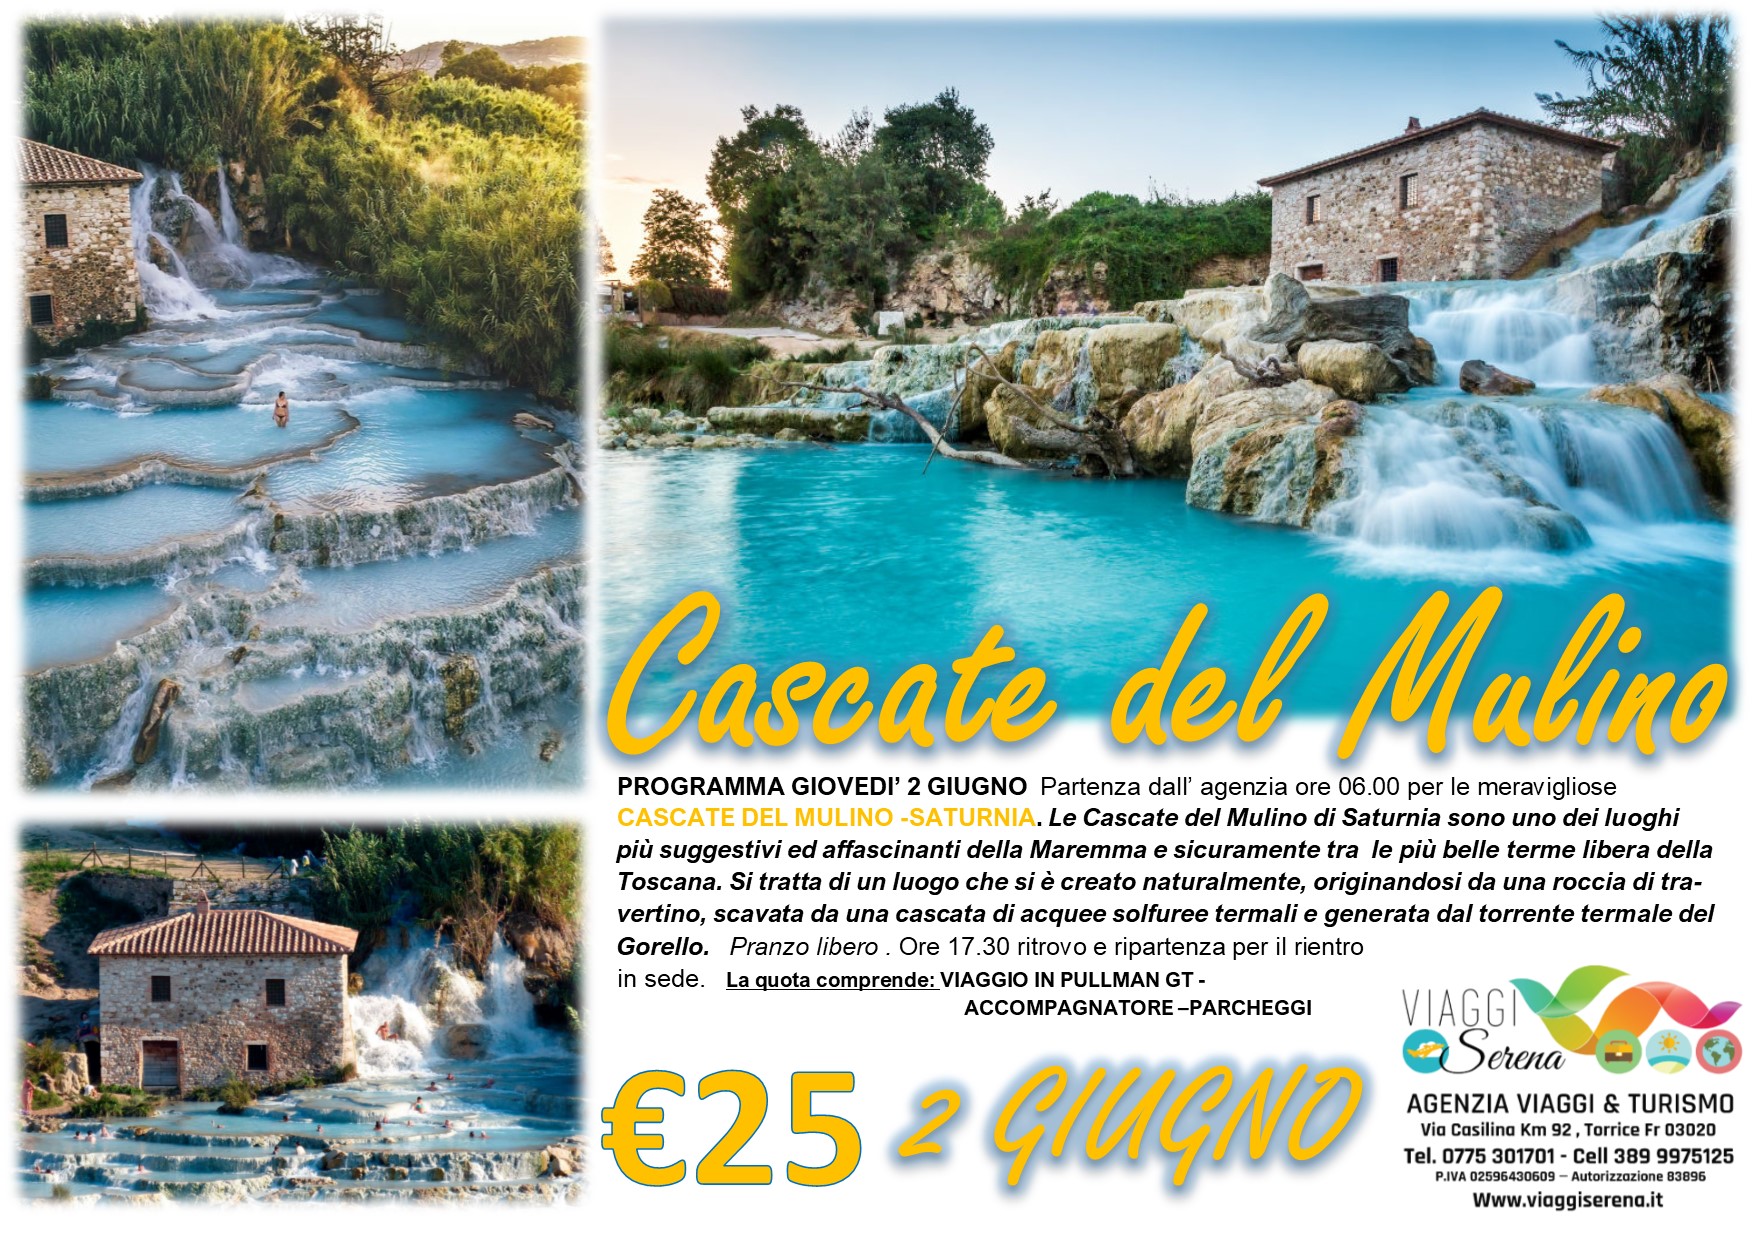 Viaggi di Gruppo: Cascate del MULINO “torrente termale del Gorello” 2 Giugno €25,00